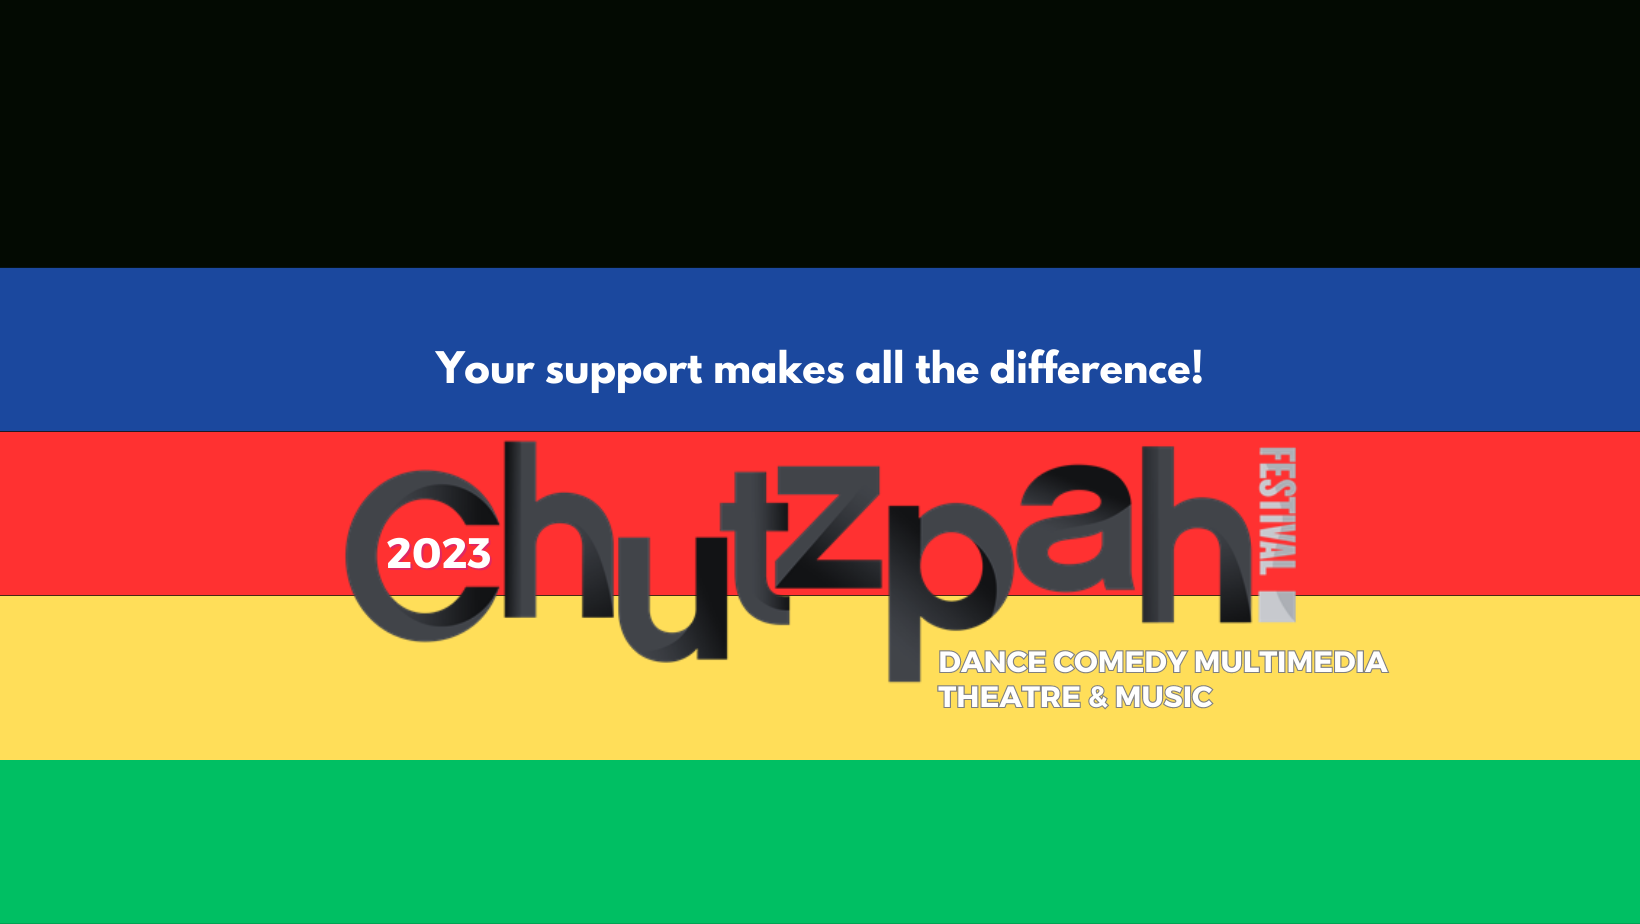 Chutzpah! Festival 2023 - Creative BC